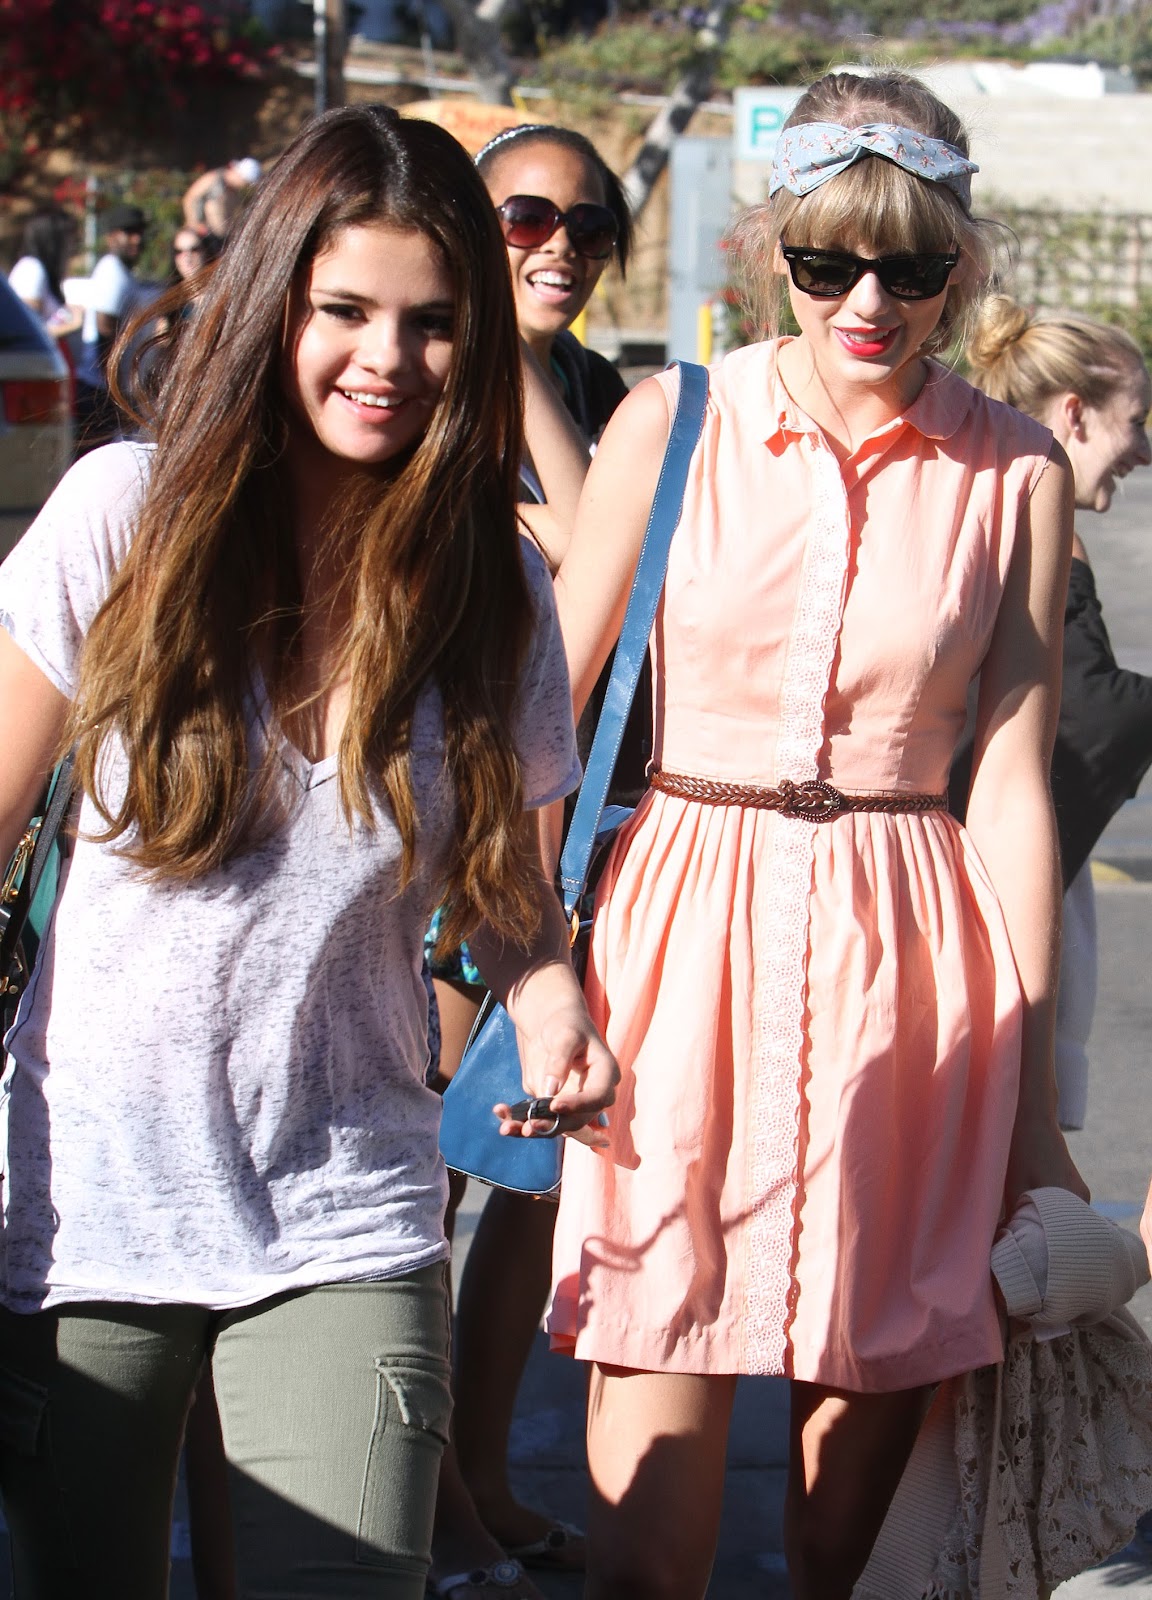 Selena Gomez in Malibu June 27, 2012 – Star Style